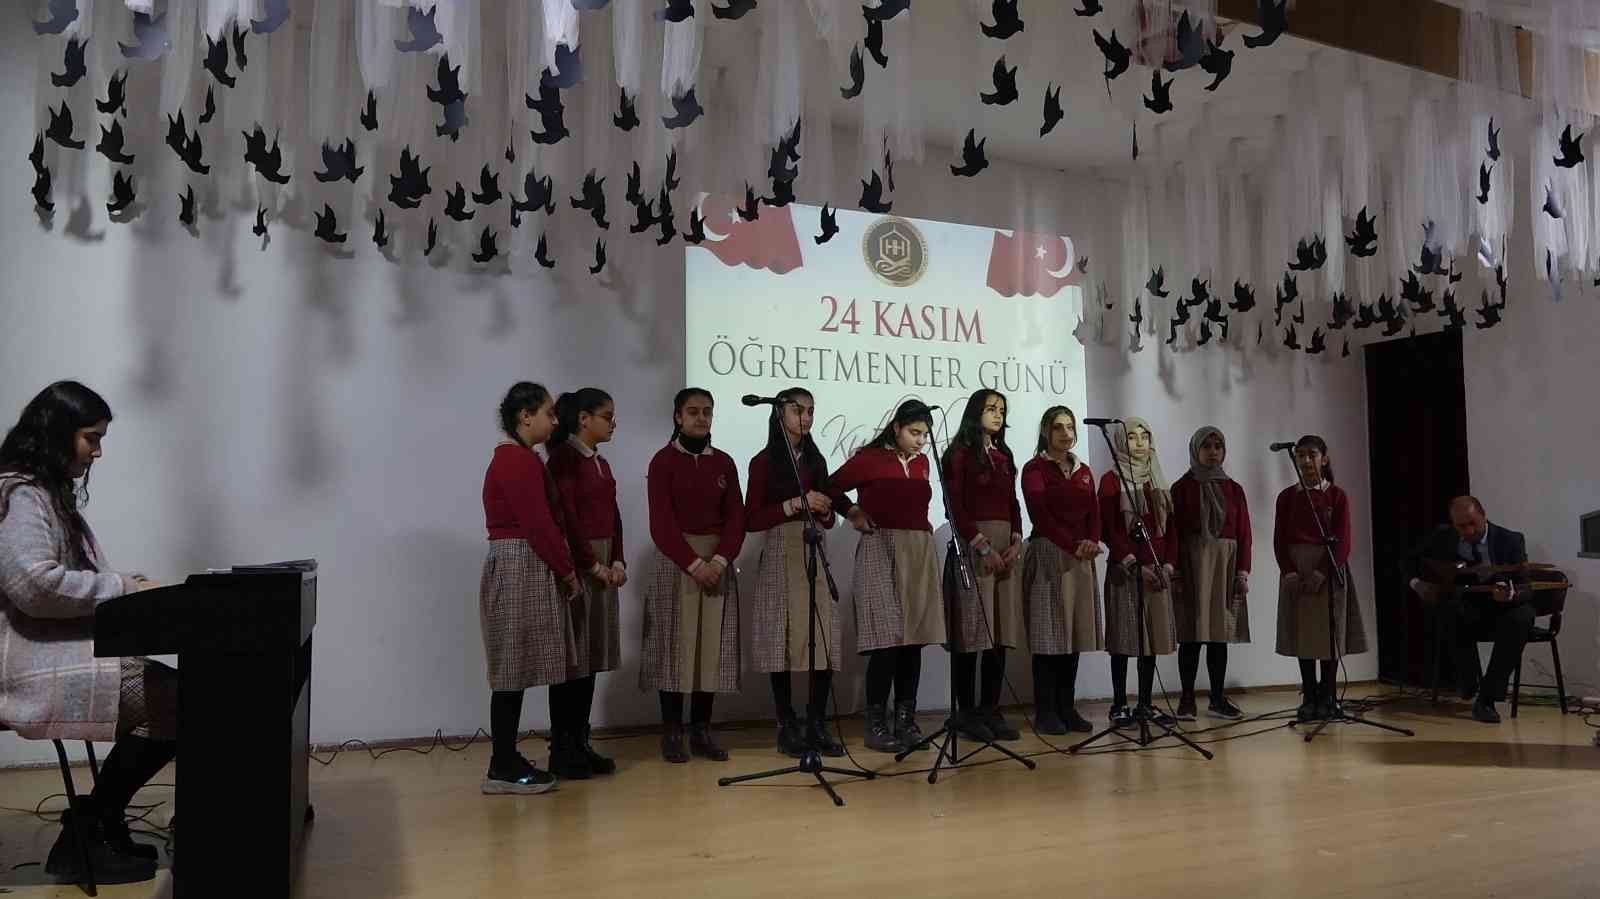 Erciş’te 24 Kasım Öğretmenler Günü kutlandı #van